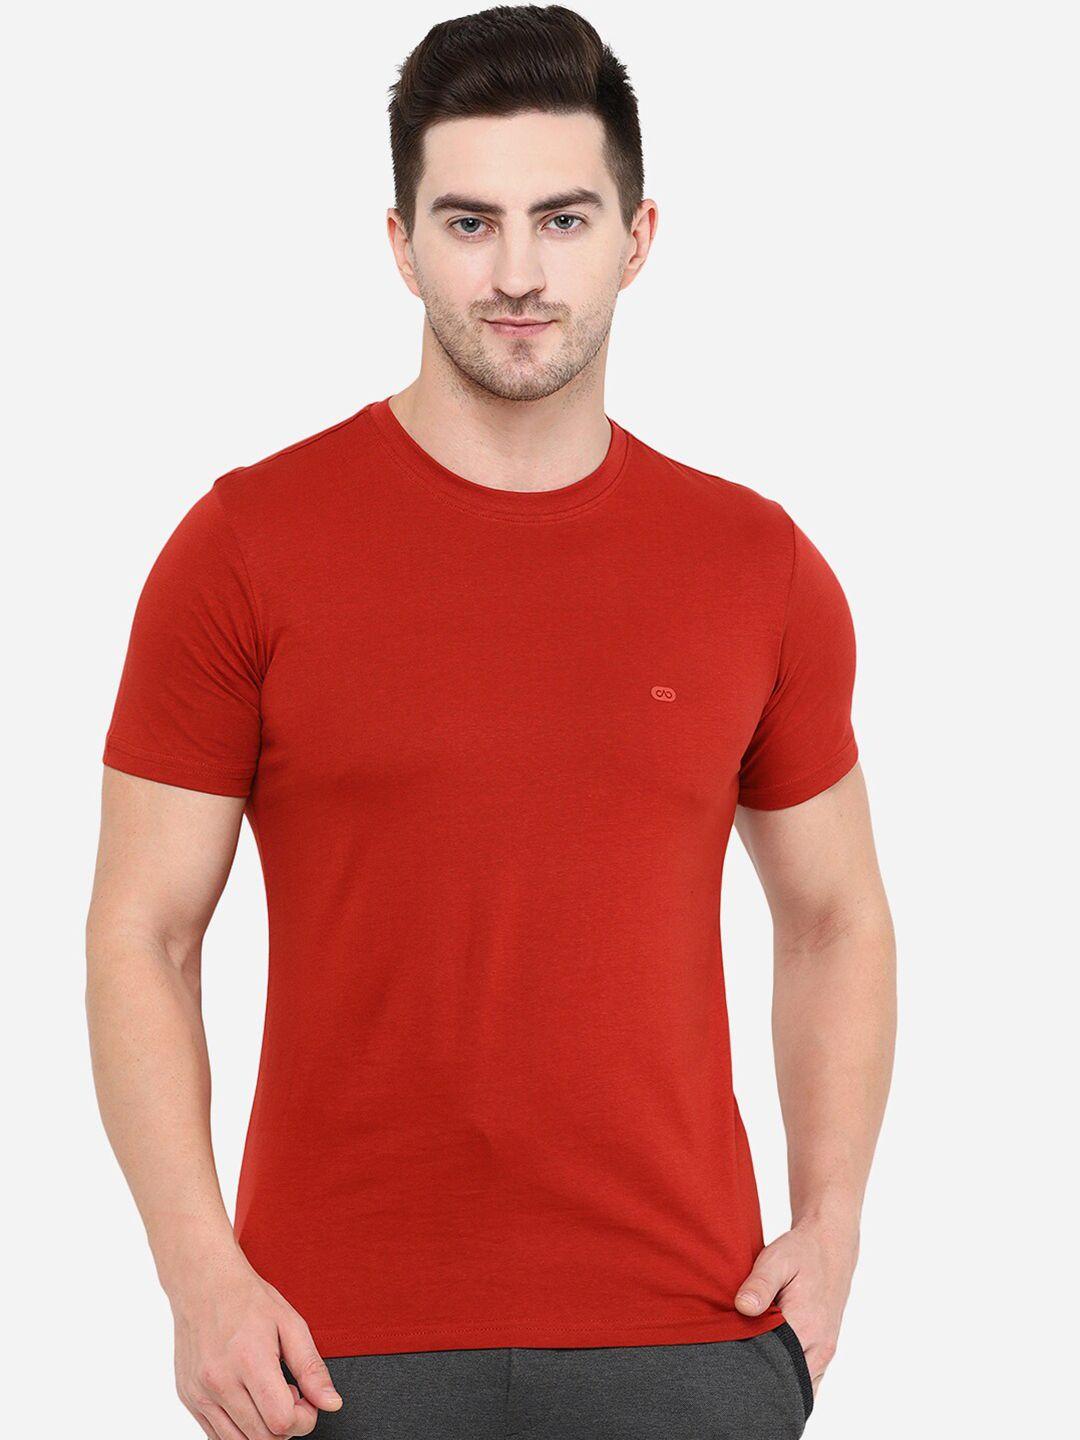 jade-blue-men-red-solid-round-neck-slim-fit-cotton-t-shirt